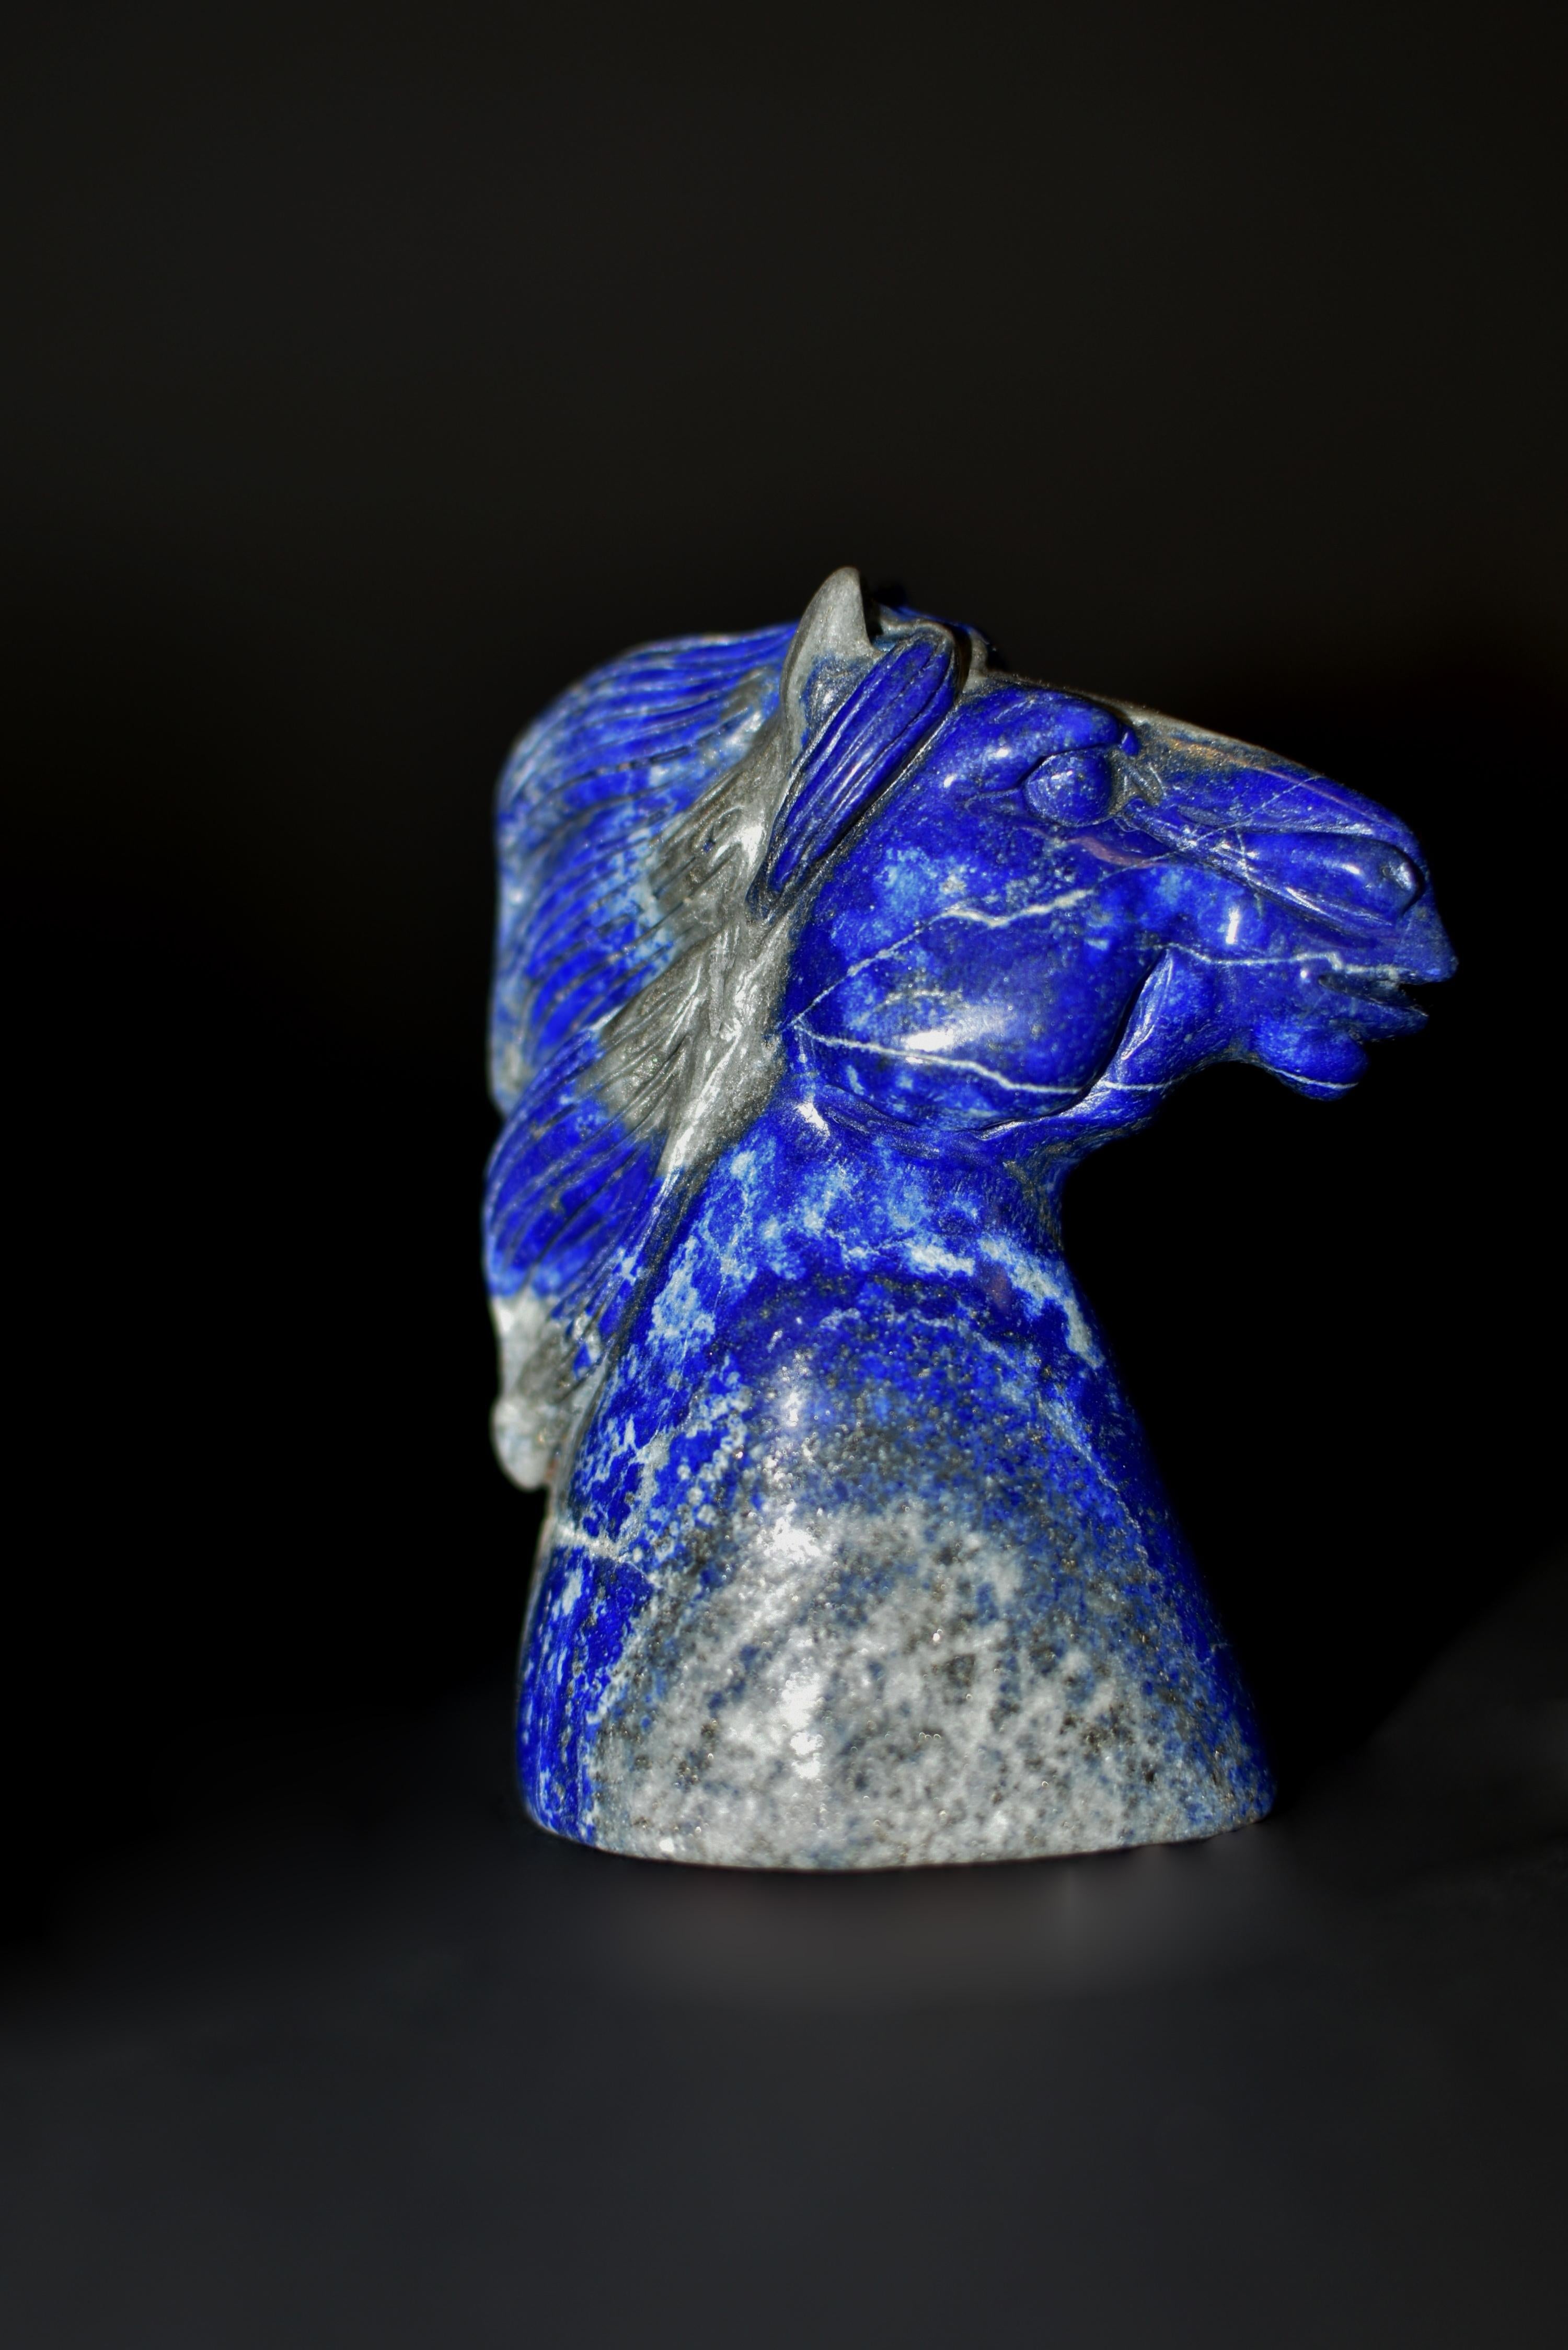 Un magnifique buste de cheval sculpté à la main en lapis-lazuli naturel de catégorie AAA. Le cheval au cou robuste et à la crinière balayée par les vents, à la bouche légèrement ouverte et aux grands yeux alertes. Le Lapis, d'un beau bleu cobalt